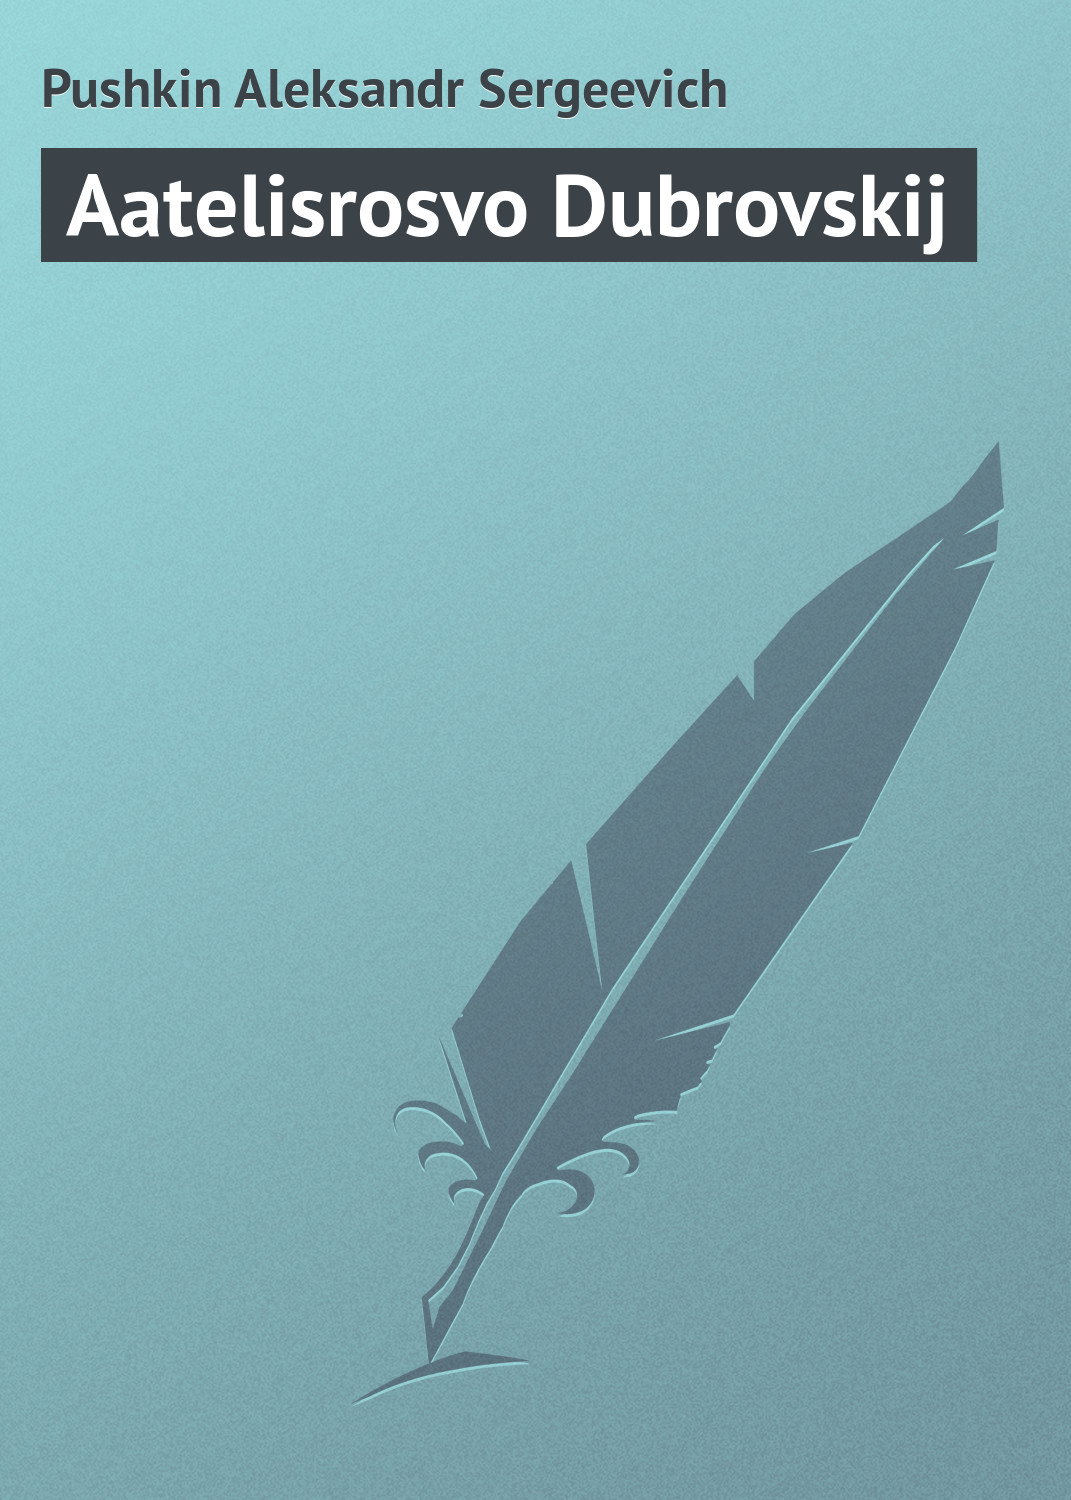 Книга Aatelisrosvo Dubrovskij из серии , созданная Aleksandr Pushkin, может относится к жанру Русская классика. Стоимость электронной книги Aatelisrosvo Dubrovskij с идентификатором 23164531 составляет 5.99 руб.